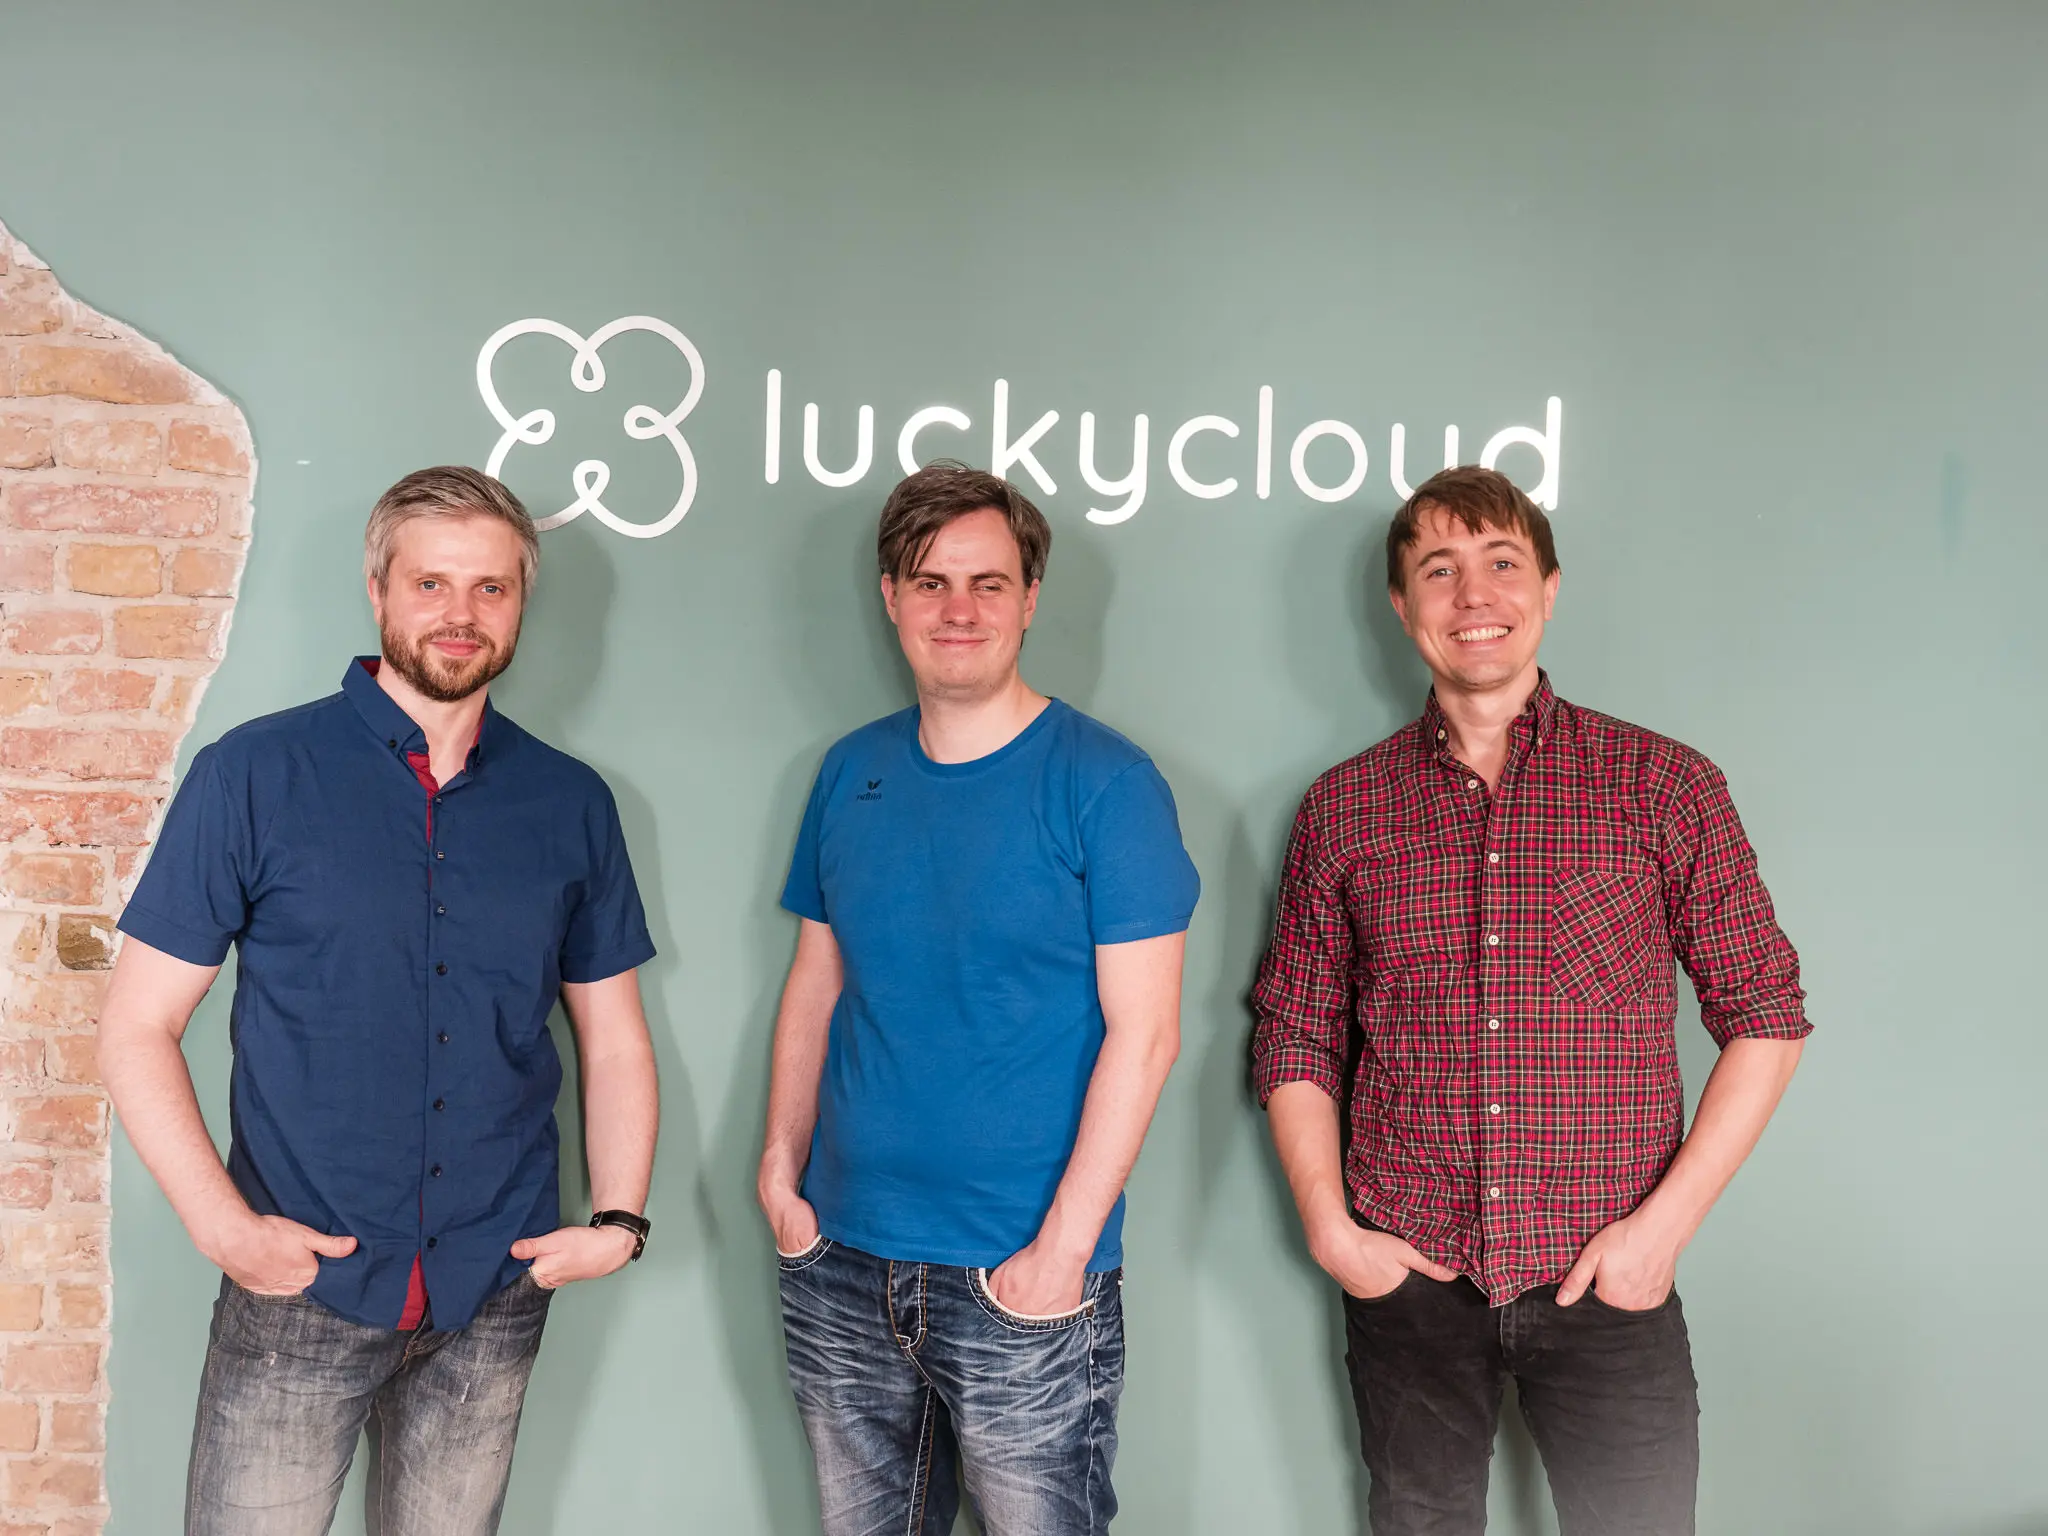 Drei luckycloud-Mitarbeiter positionieren sich vor dem Firmenschriftzug.